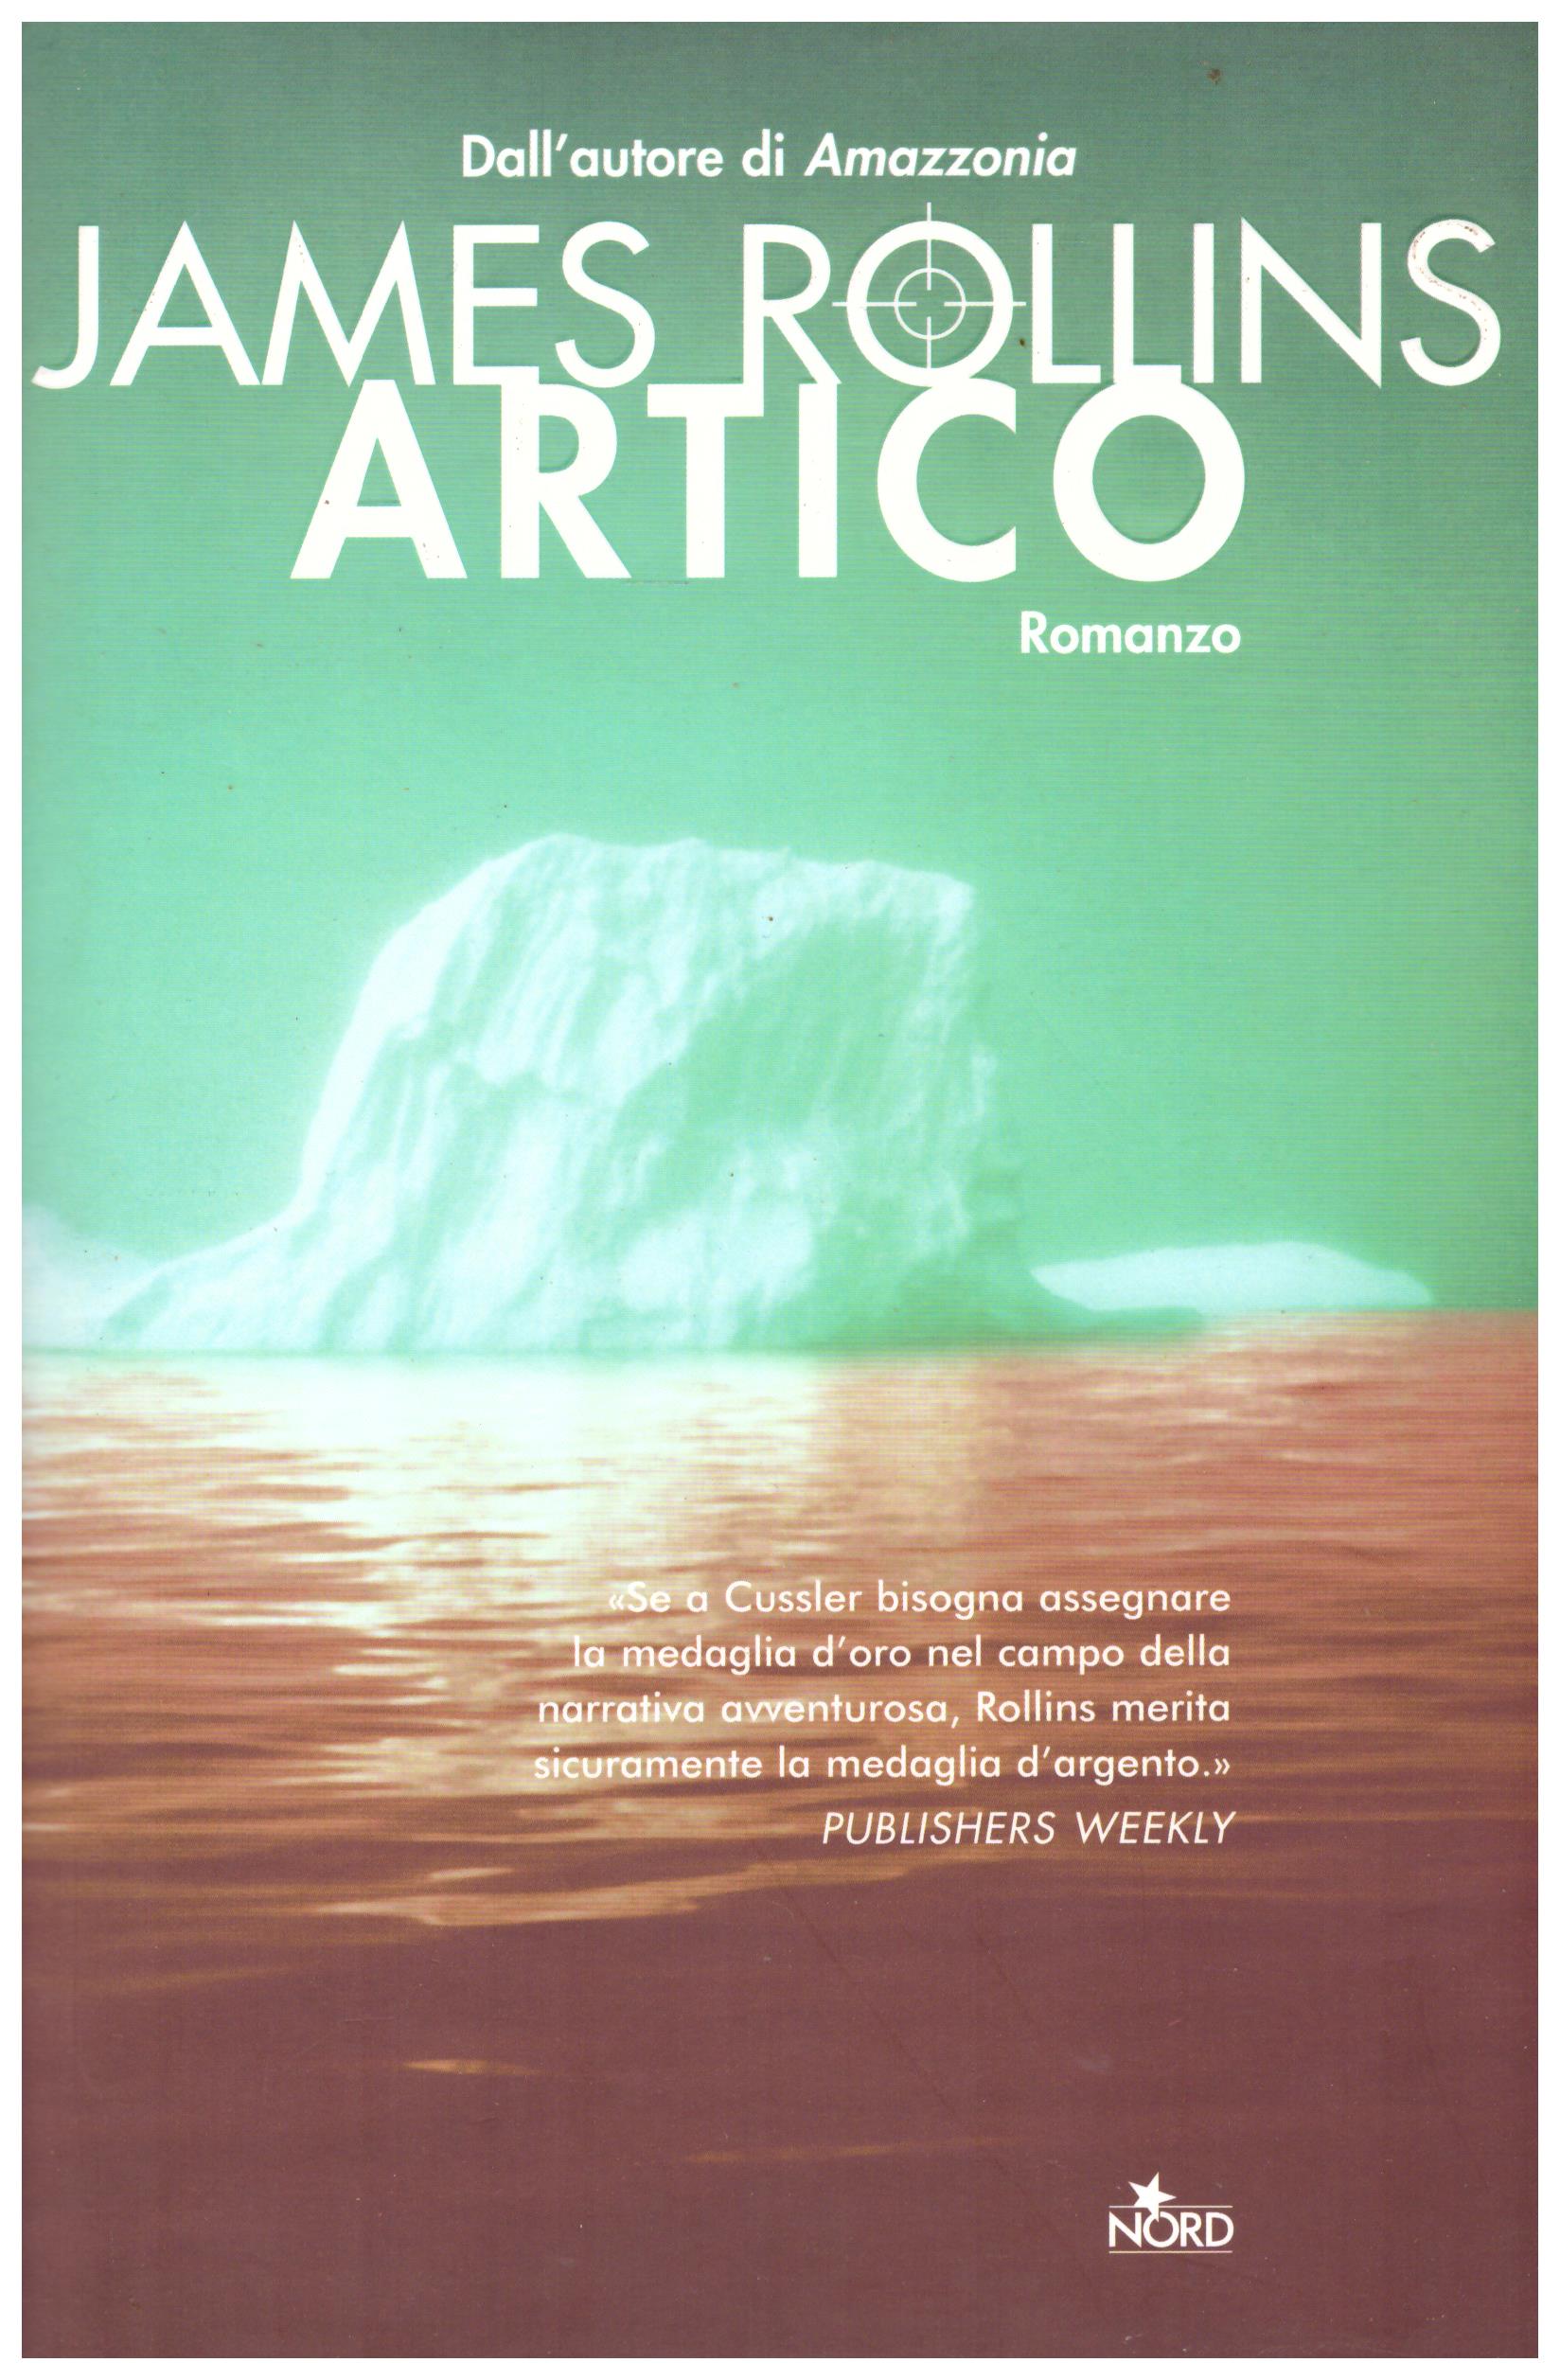 Titolo: Artico Autore: James Rollins  Editore: Nord, 2005